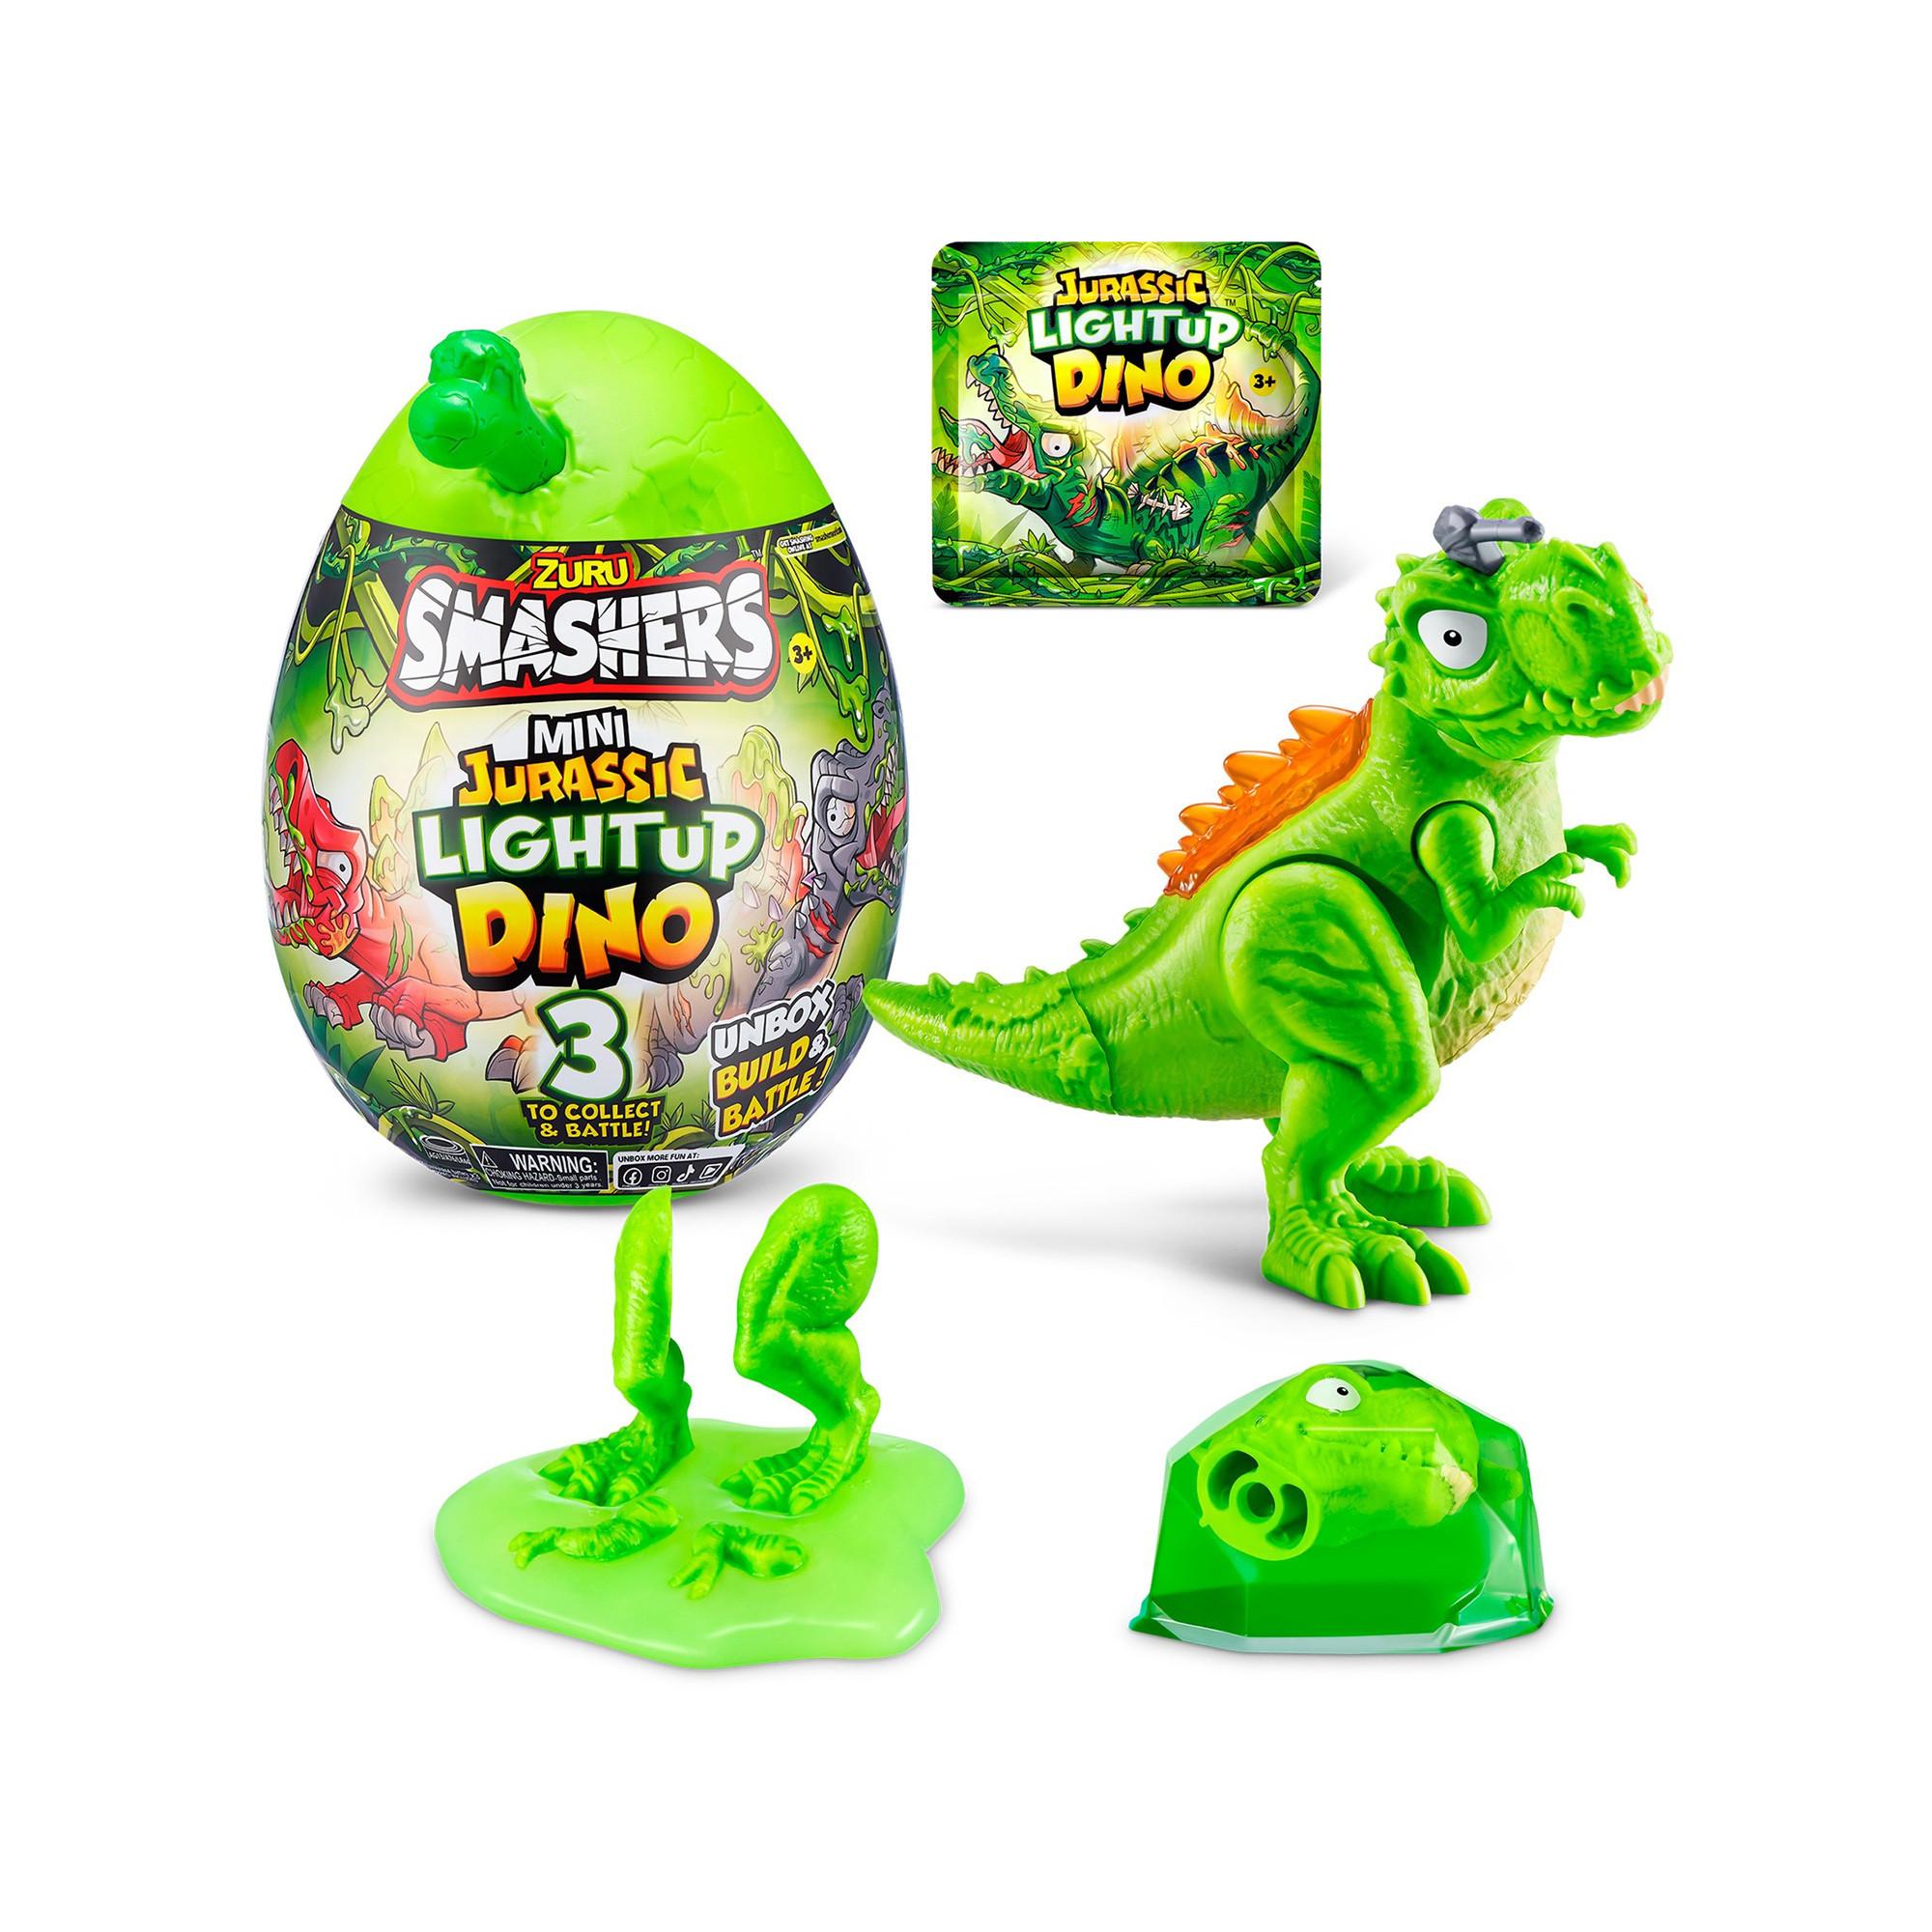 ZURU  Smashers Mini Egg Light Up Dino, modelli assortiti 